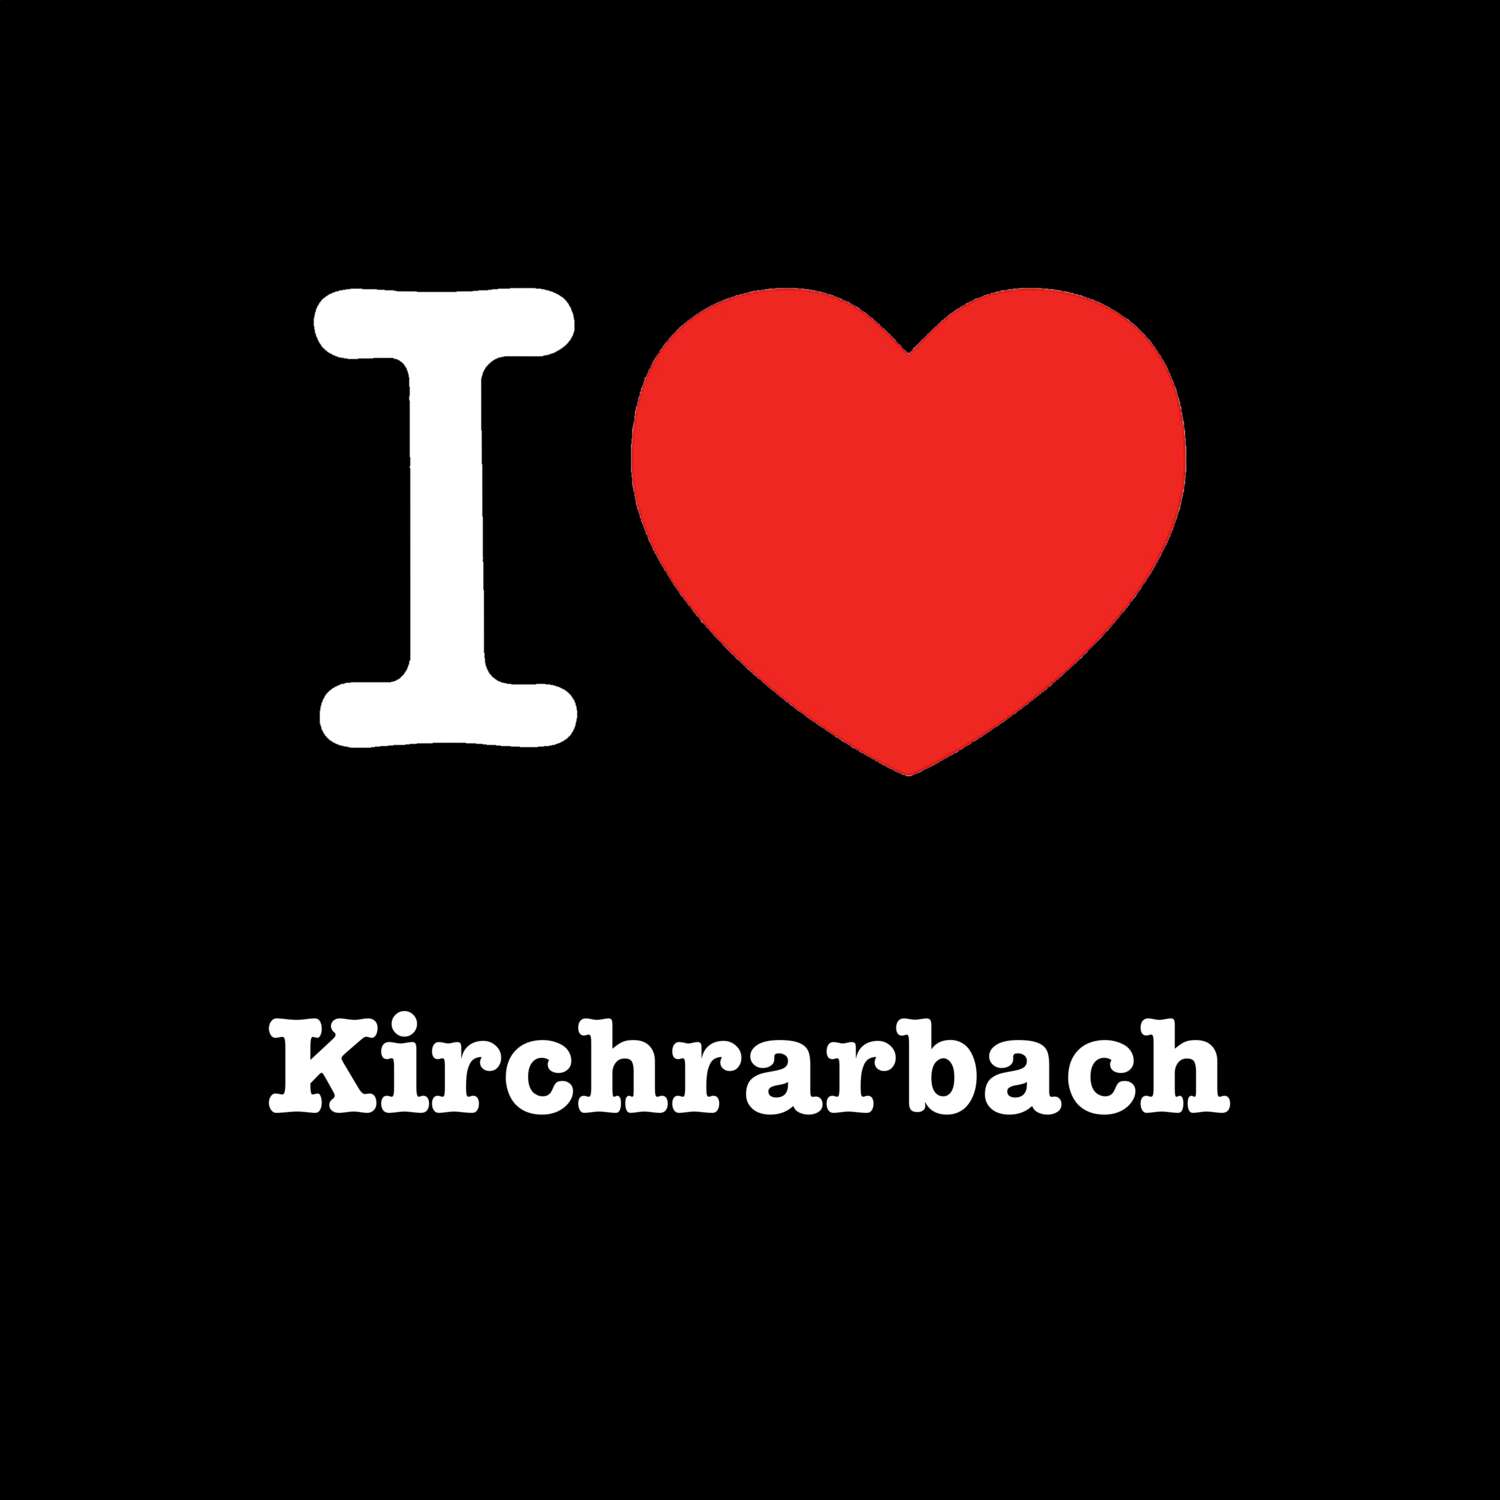 Kirchrarbach T-Shirt »I love«